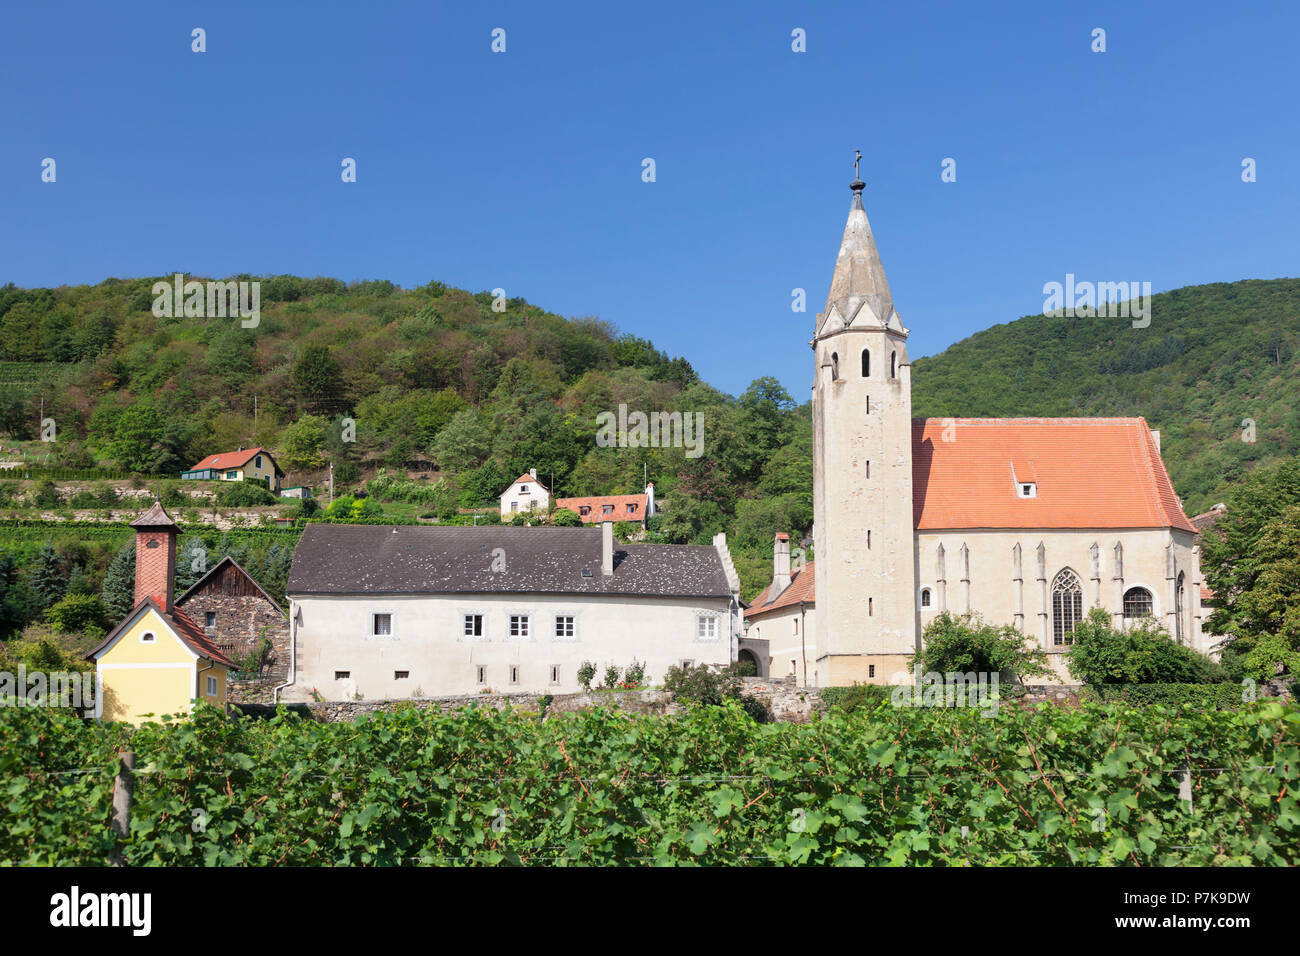 Church of St. Sigismund, Schwallenbach, Wachau, Lower Austria, Austria Stock Photo